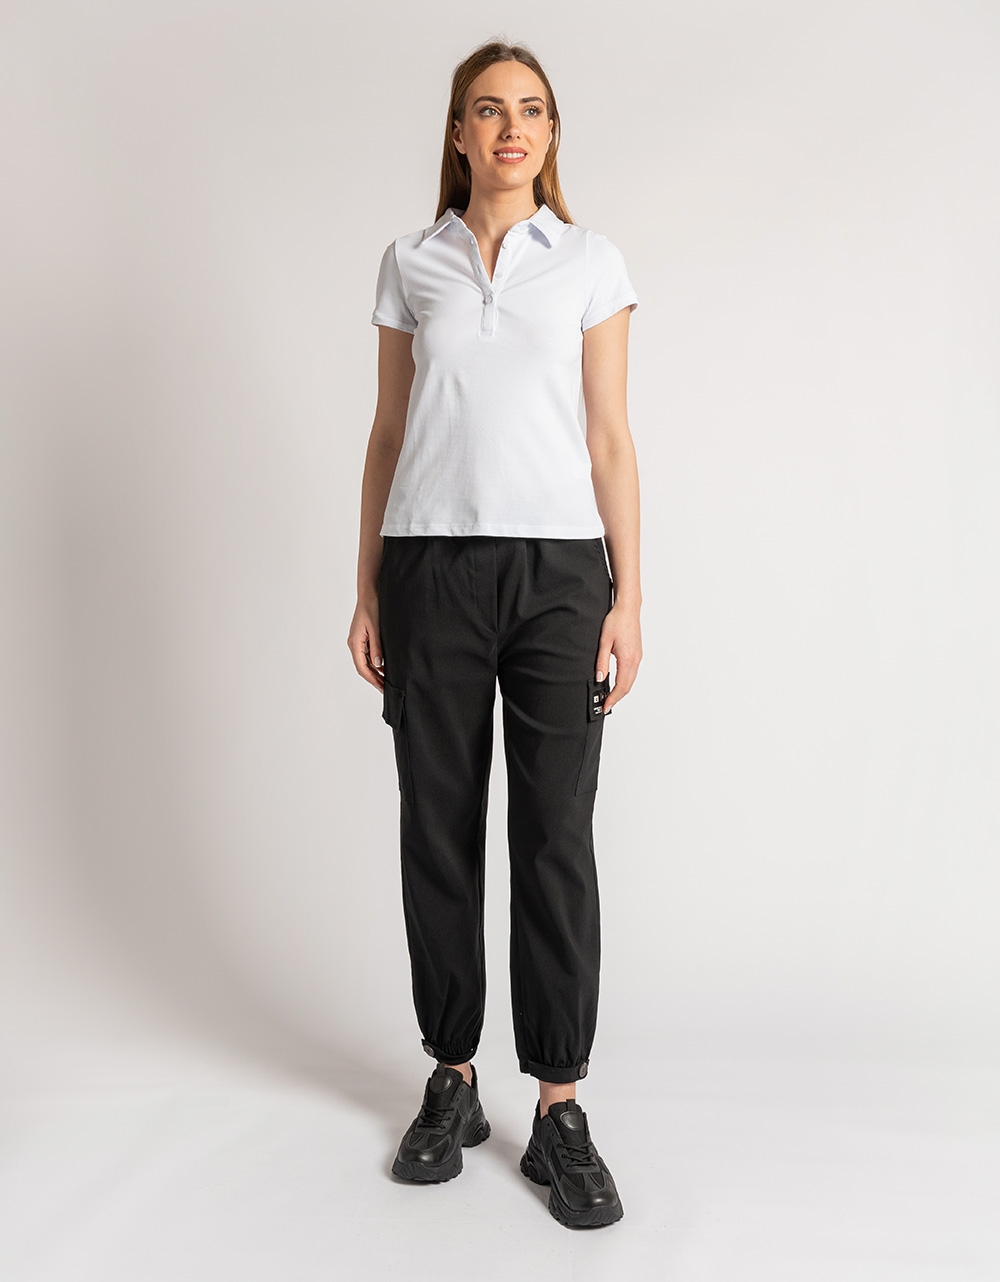 Εικόνα από Κοντομάνικη βαμβακερή μπλούζα με κουμπιά Λευκό